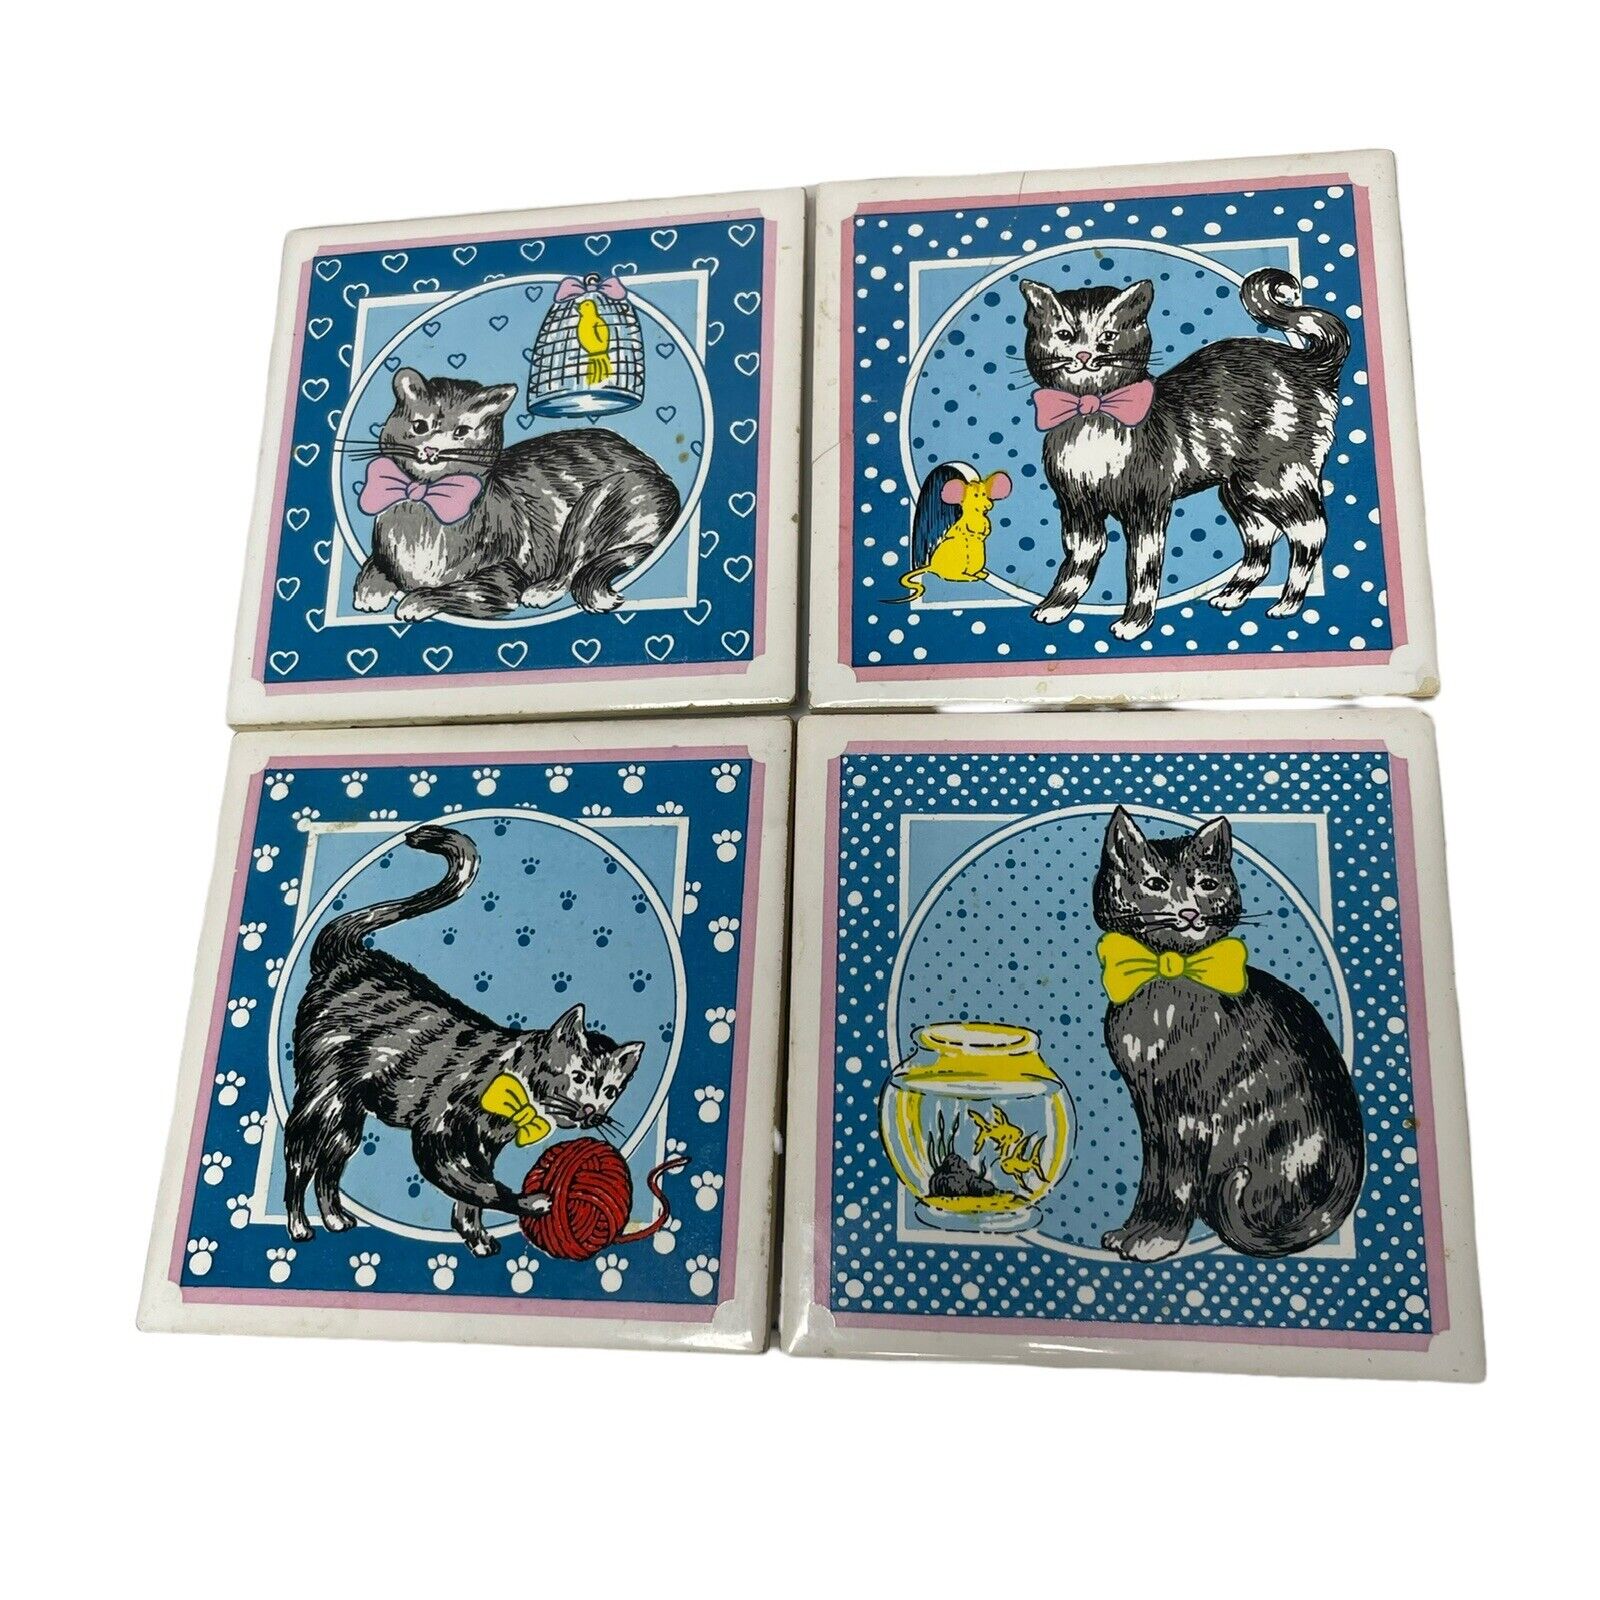 Vintage Cat Design Tile Trivet Set of 4 Coasters Wall Art Spoon Rests Ceramic